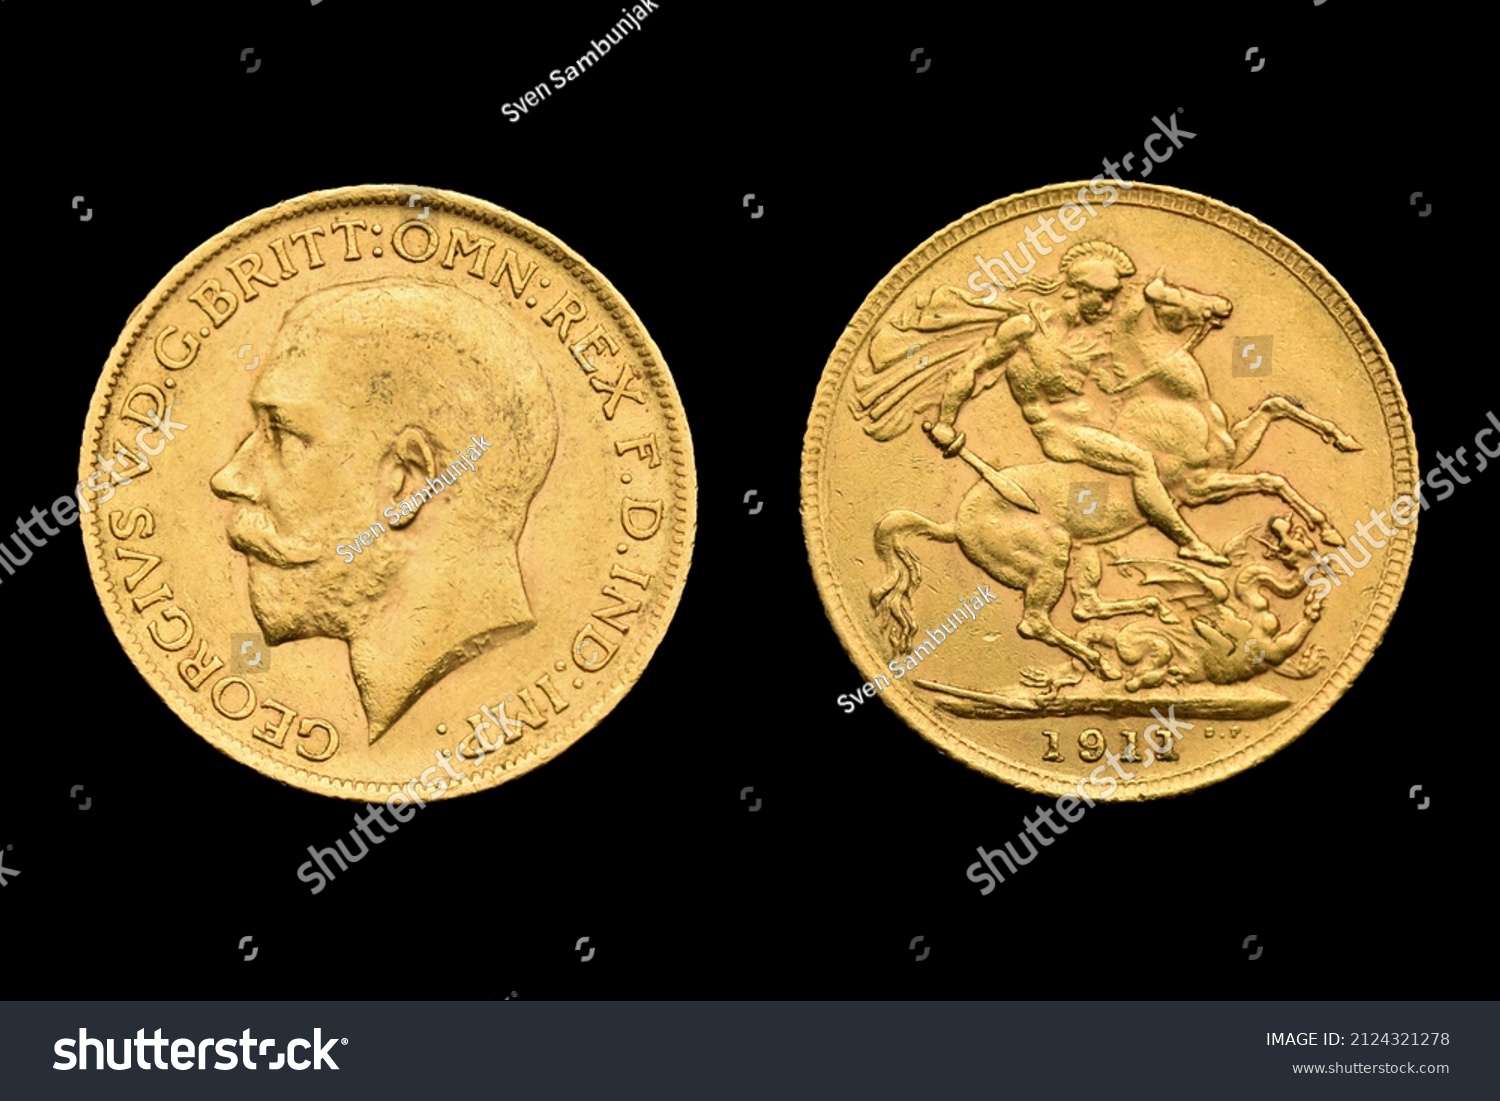 Sovereign Gold Coin George V, Georgivs V, 1911, obverse, reverse United Kingdom, St George Dragon #2124321278